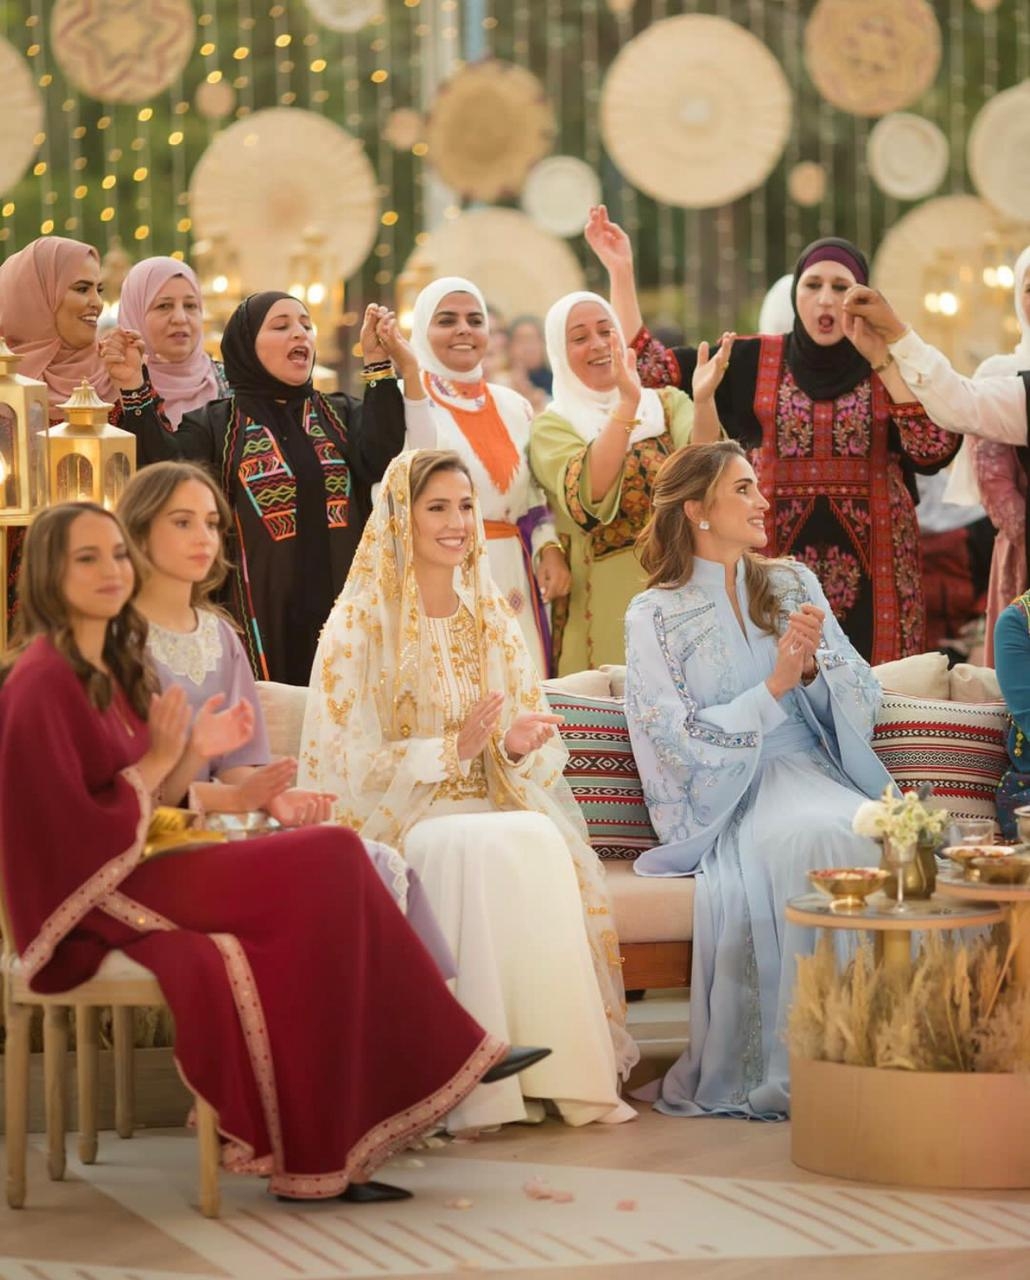 الاستعدادات لمراسم زفاف ولي العهد الأردني جارية على قدم وساق